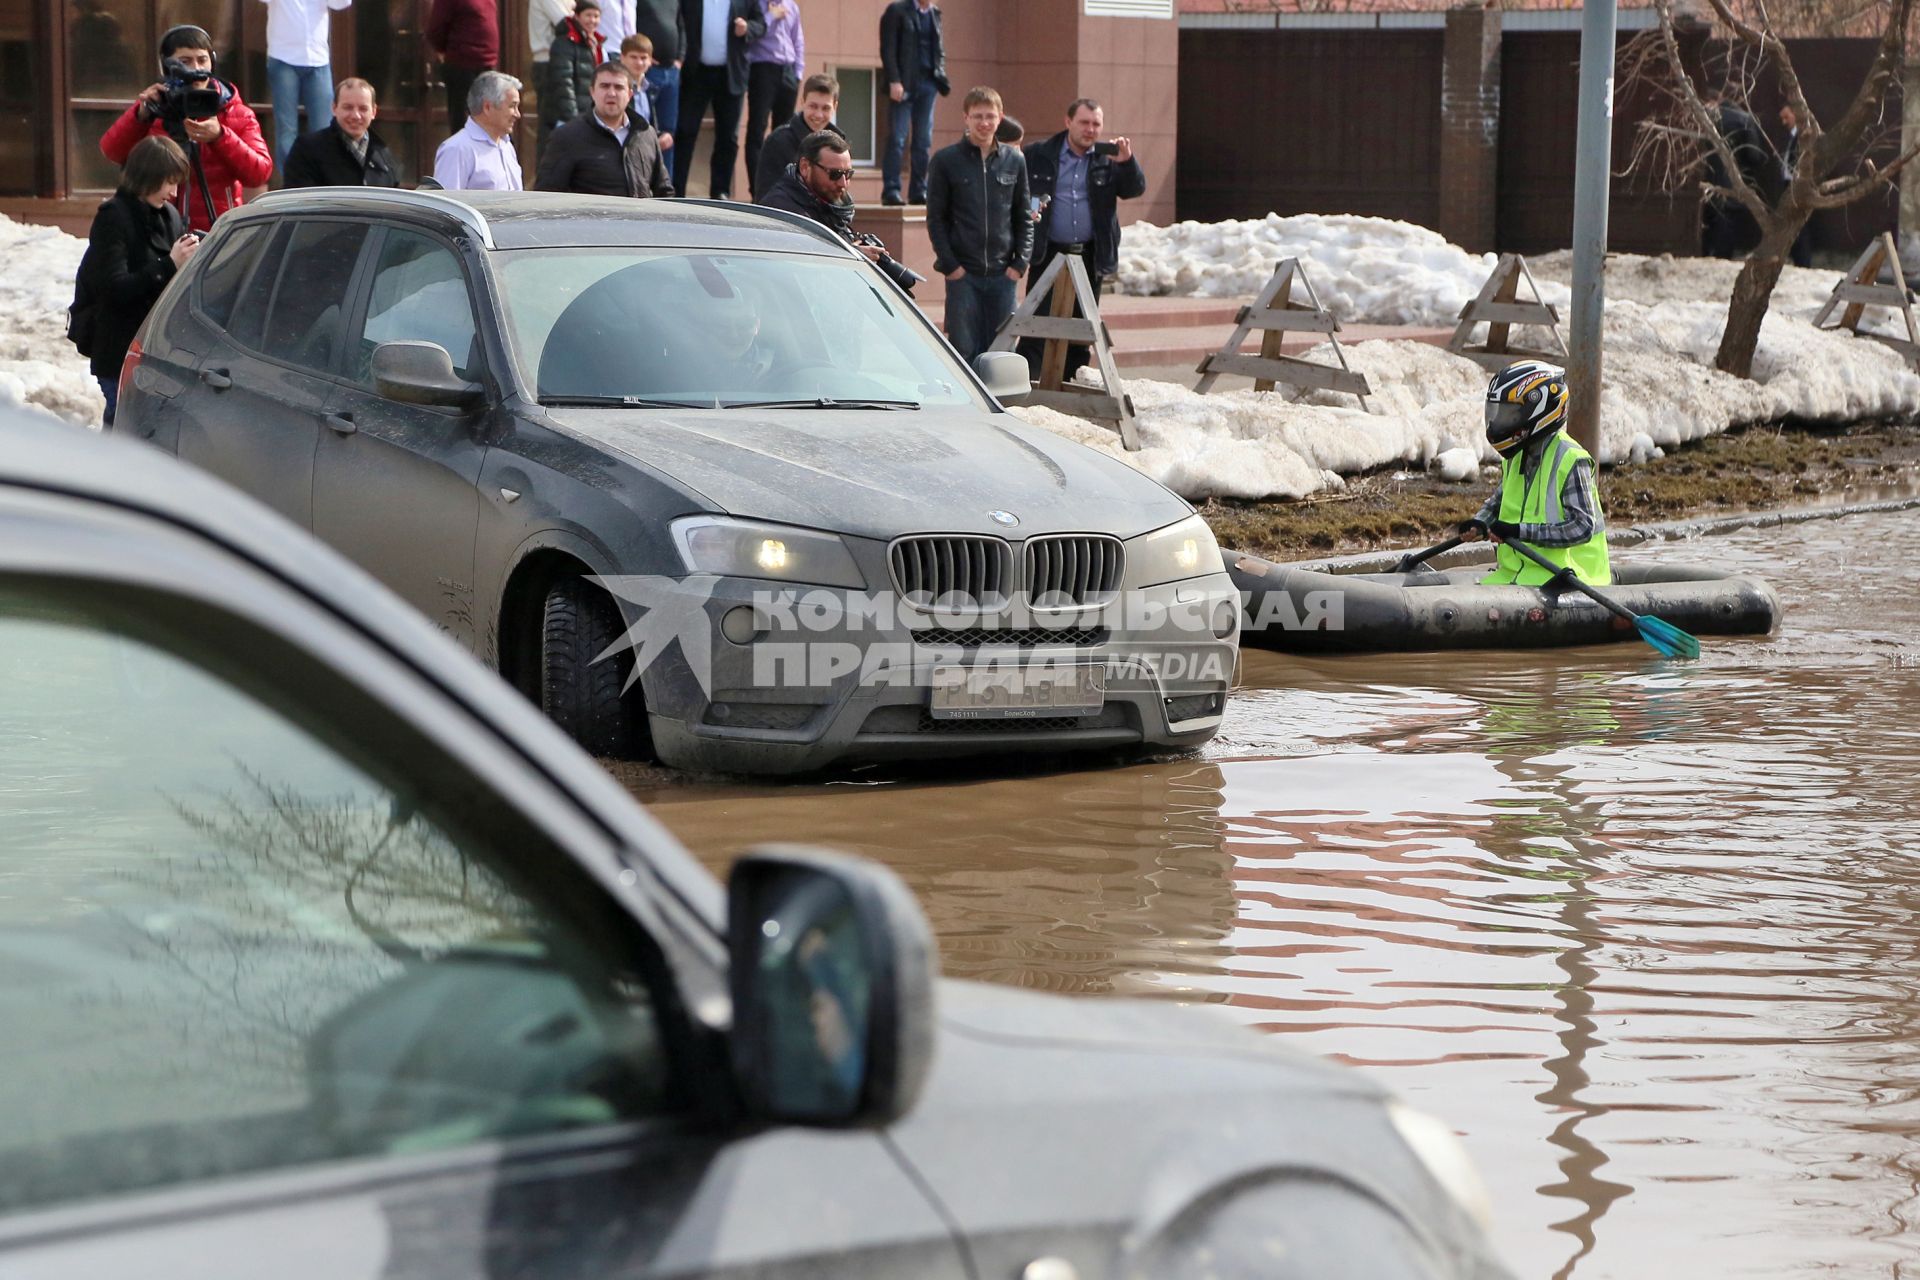 Из-за быстрого таяния снегов весенние паводковые воды затопили проезжую часть на улицах. На снимке: мужчина на резиновой лодке на затопленной улице.